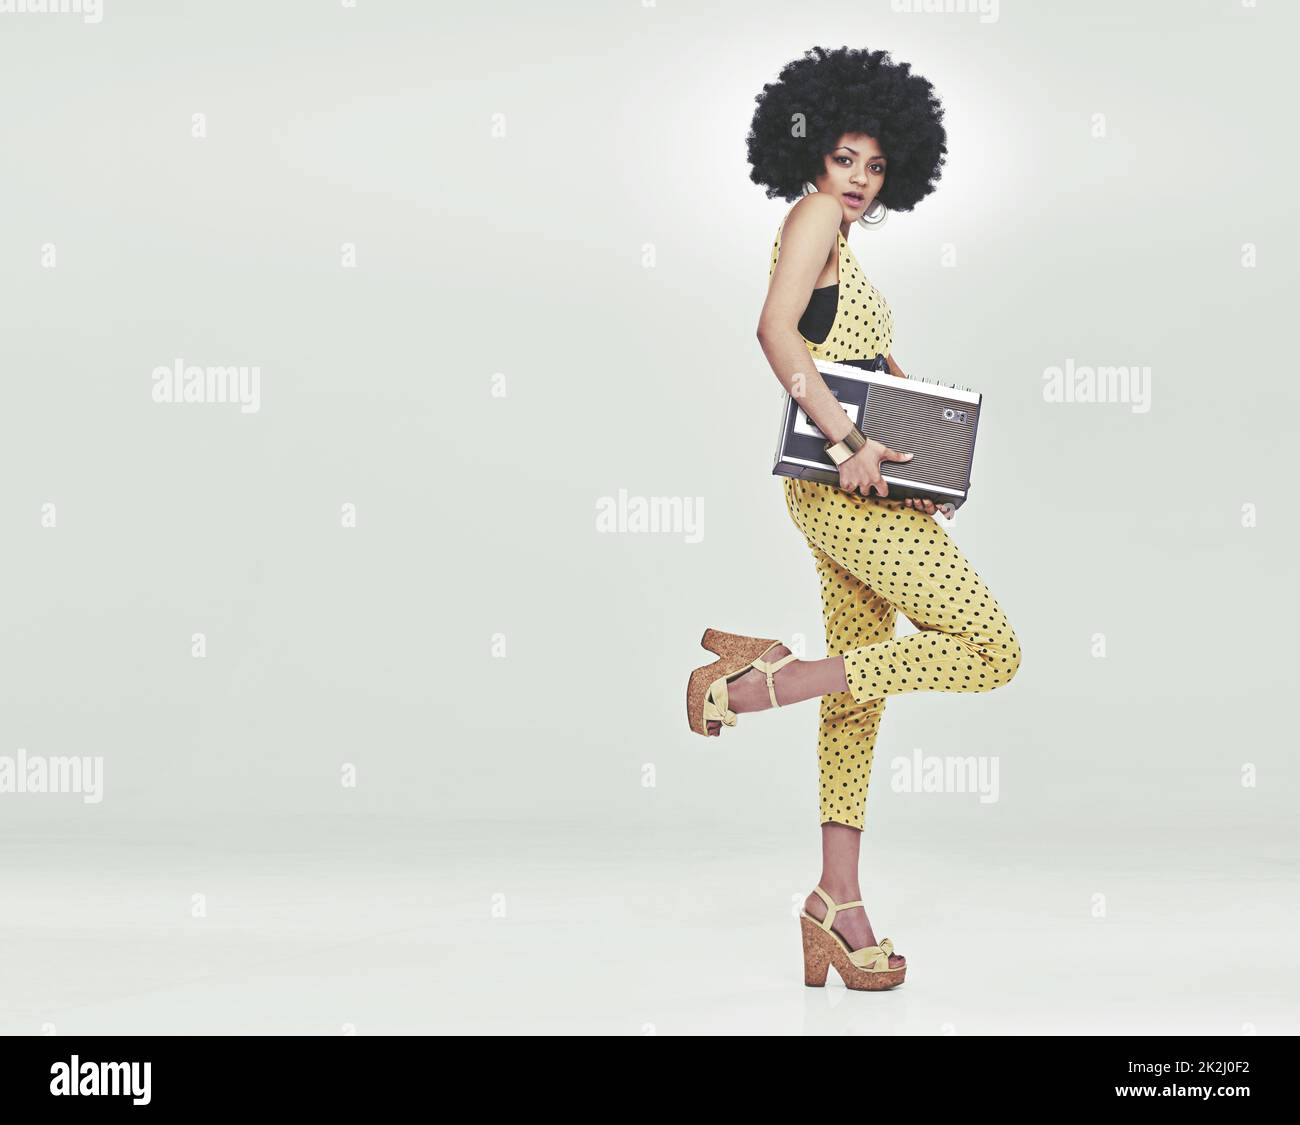 Zeit zur Disco. Eine junge Frau, die einen Retro-Jumpsuit aus dem Jahr 70s trägt, einen Kassettenspieler hält und eine Disco-Pose aufwirft. Stockfoto